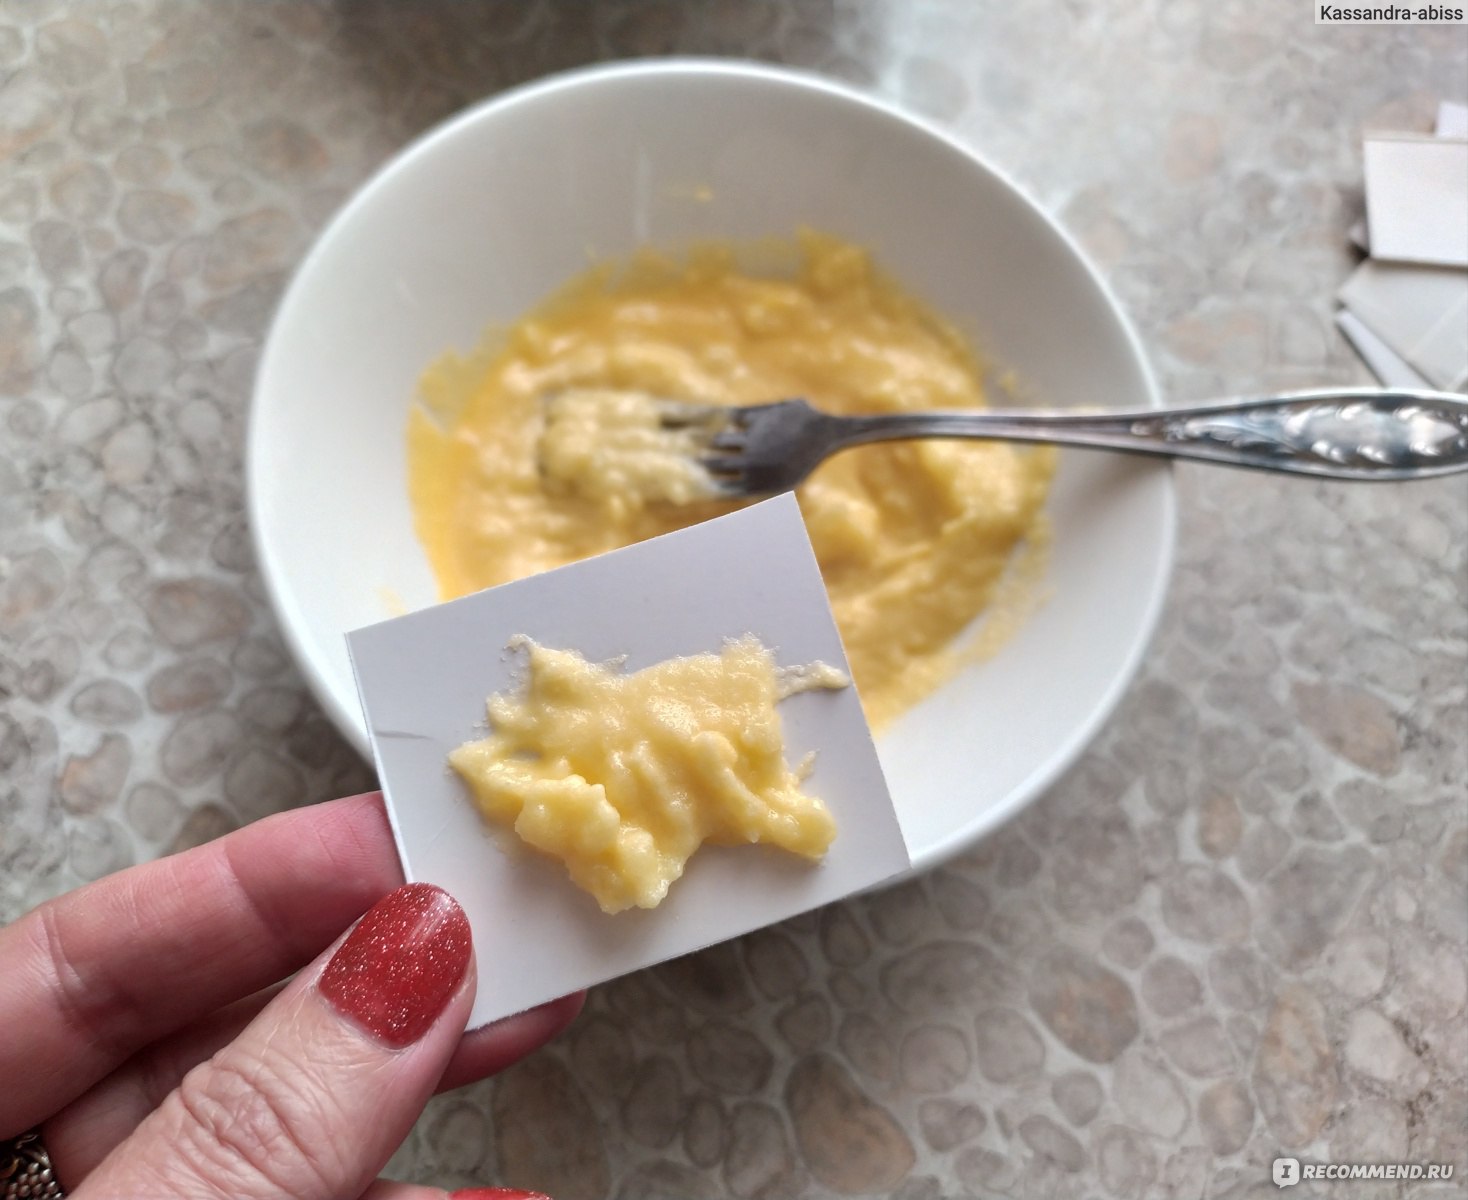 «Как приготовить смесь от тараканов из борной кислоты с яйцом?» — Яндекс Кью